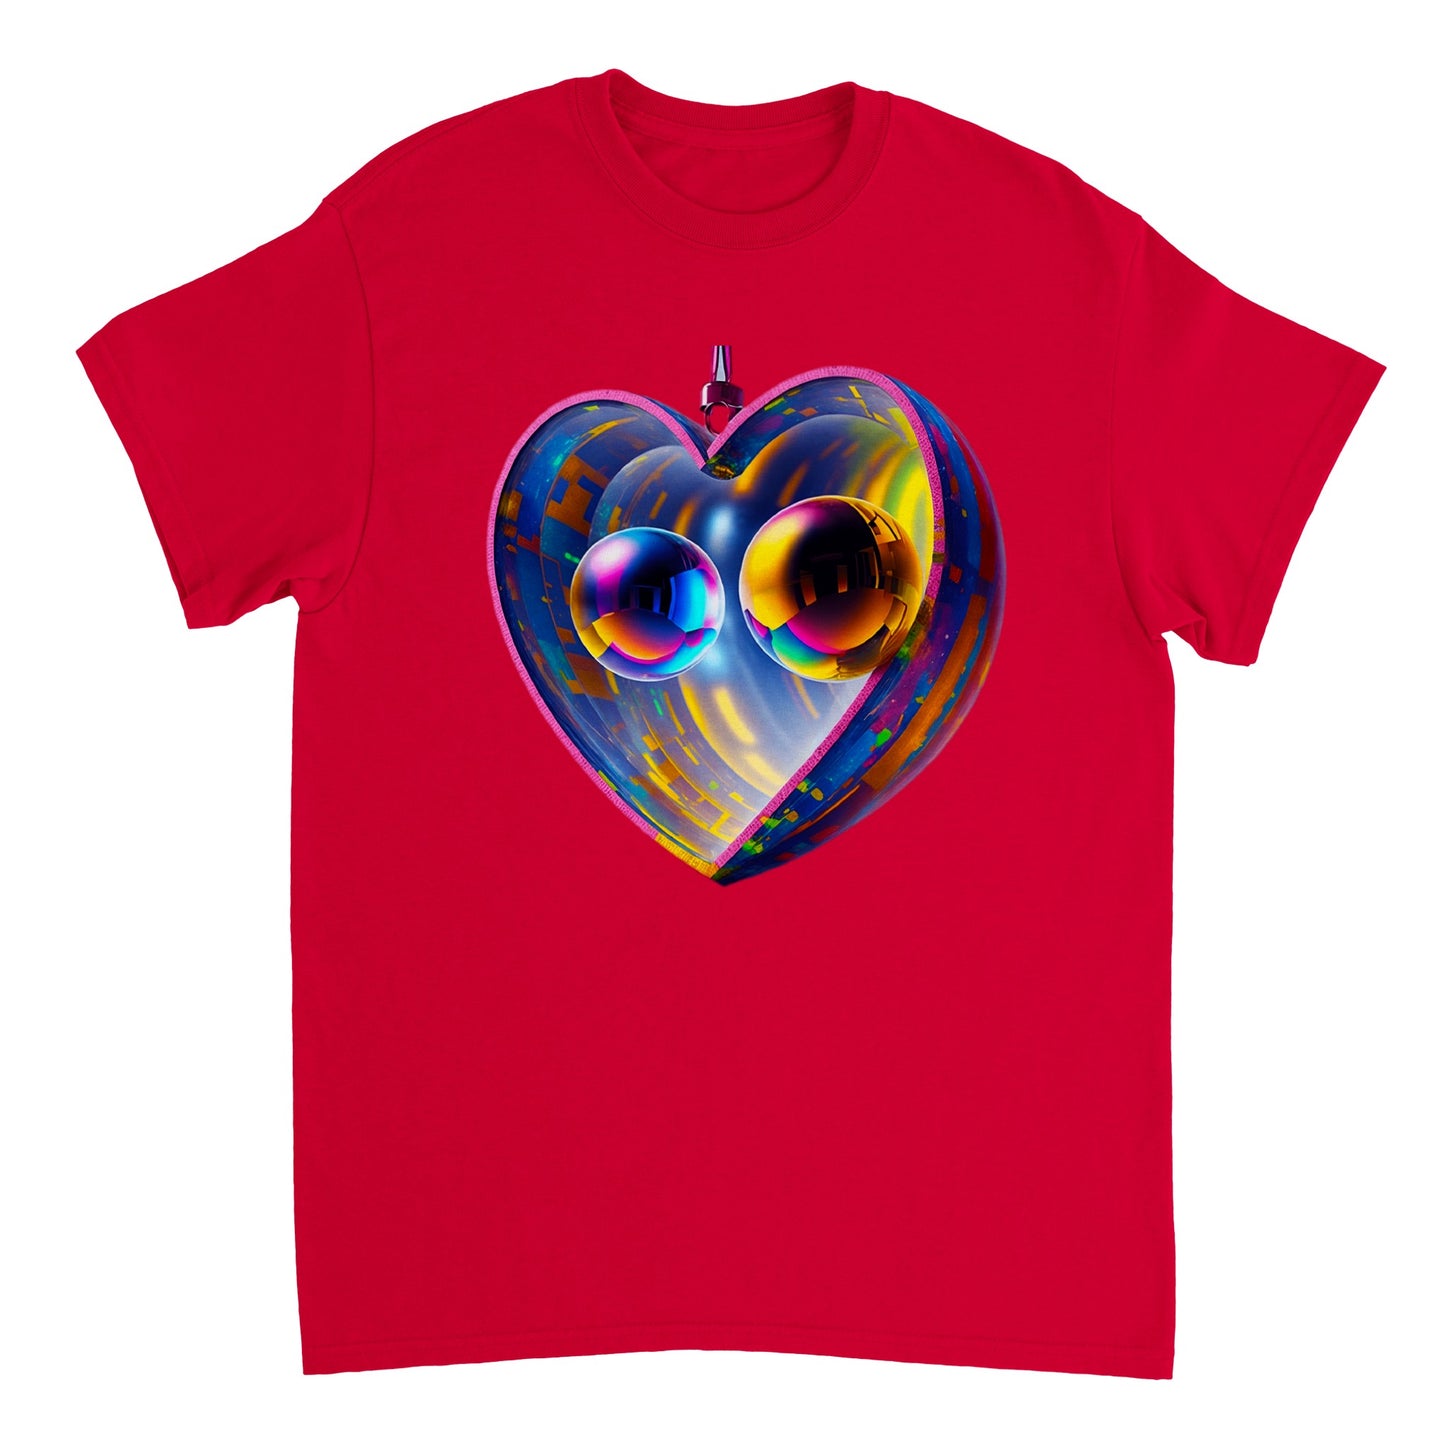 Love Heart - Heavyweight Unisex Crewneck T-shirt 93